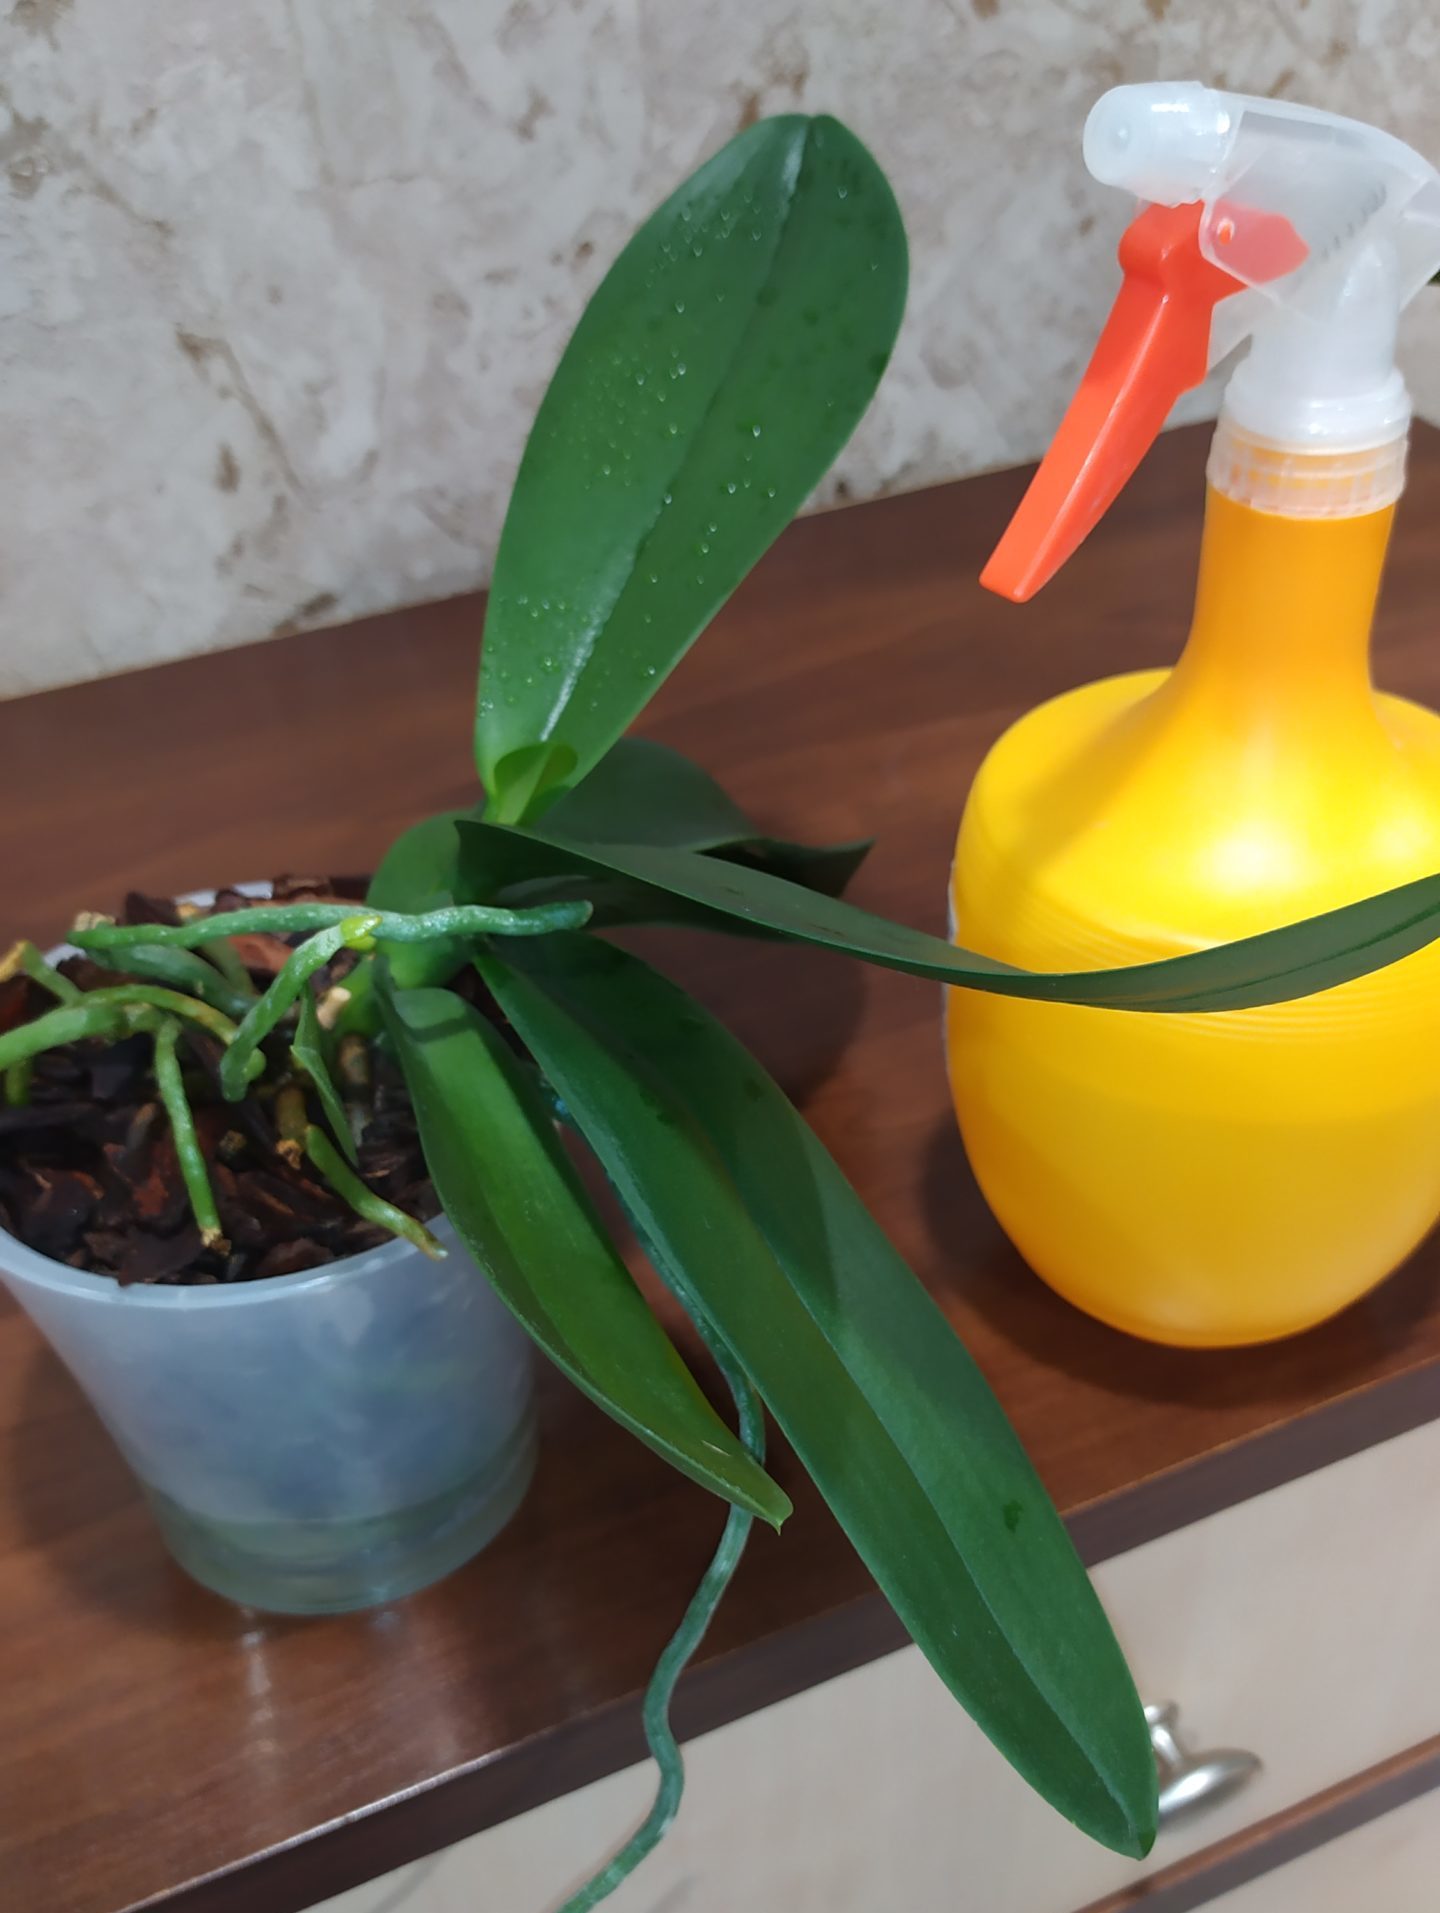 Способствует ли банановая кожура росту орхидей?